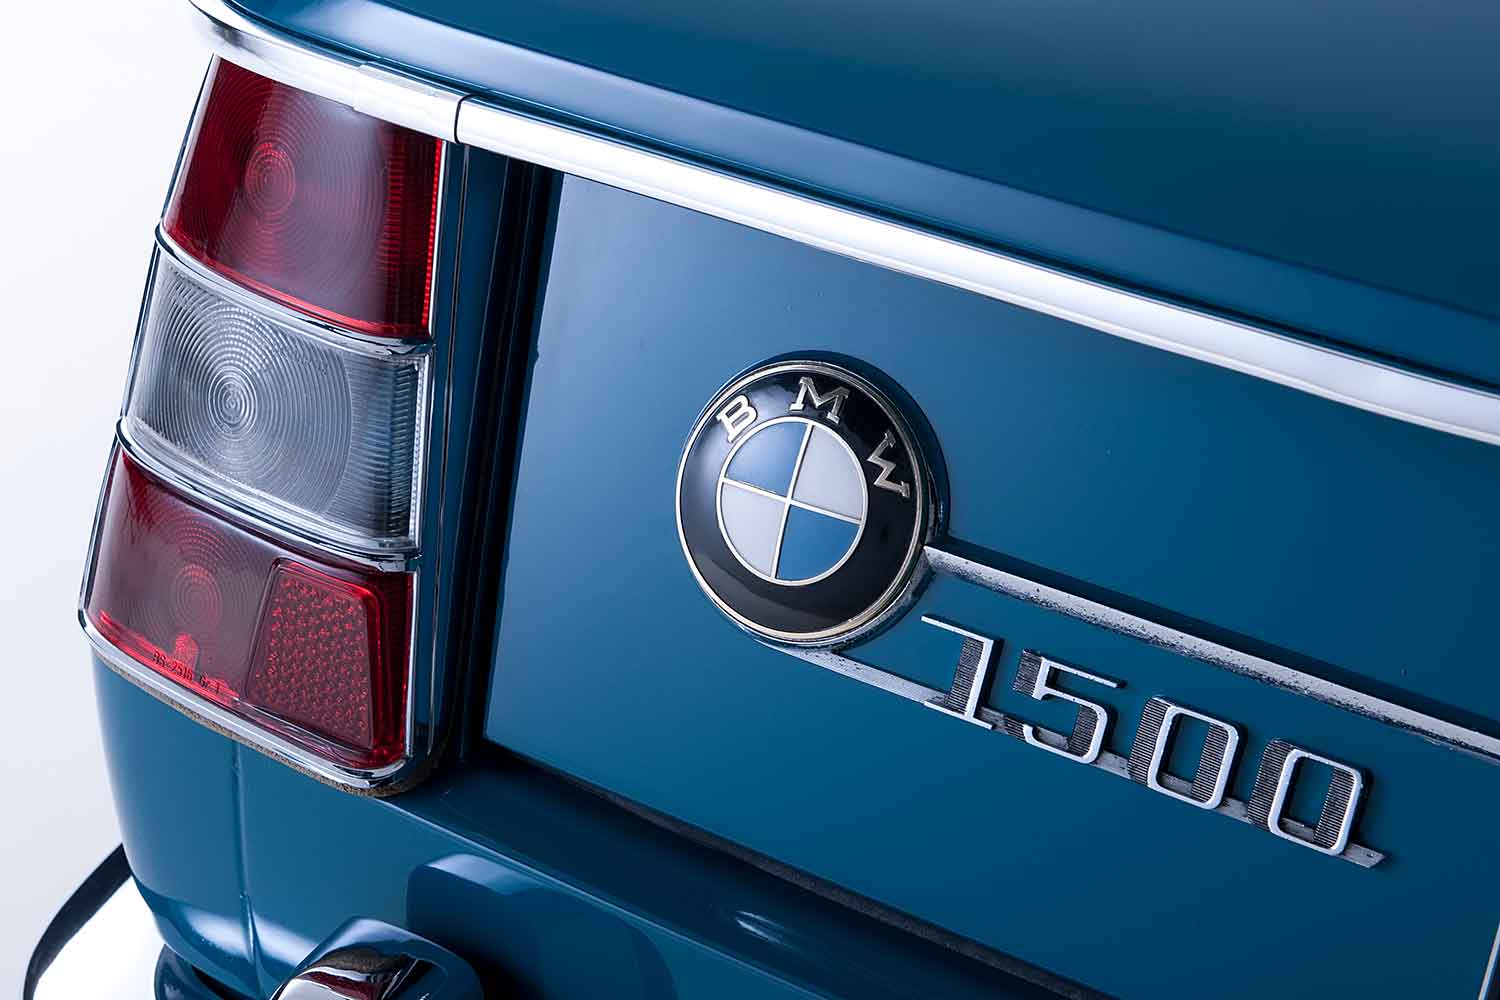 BMWのブランドロゴマーク